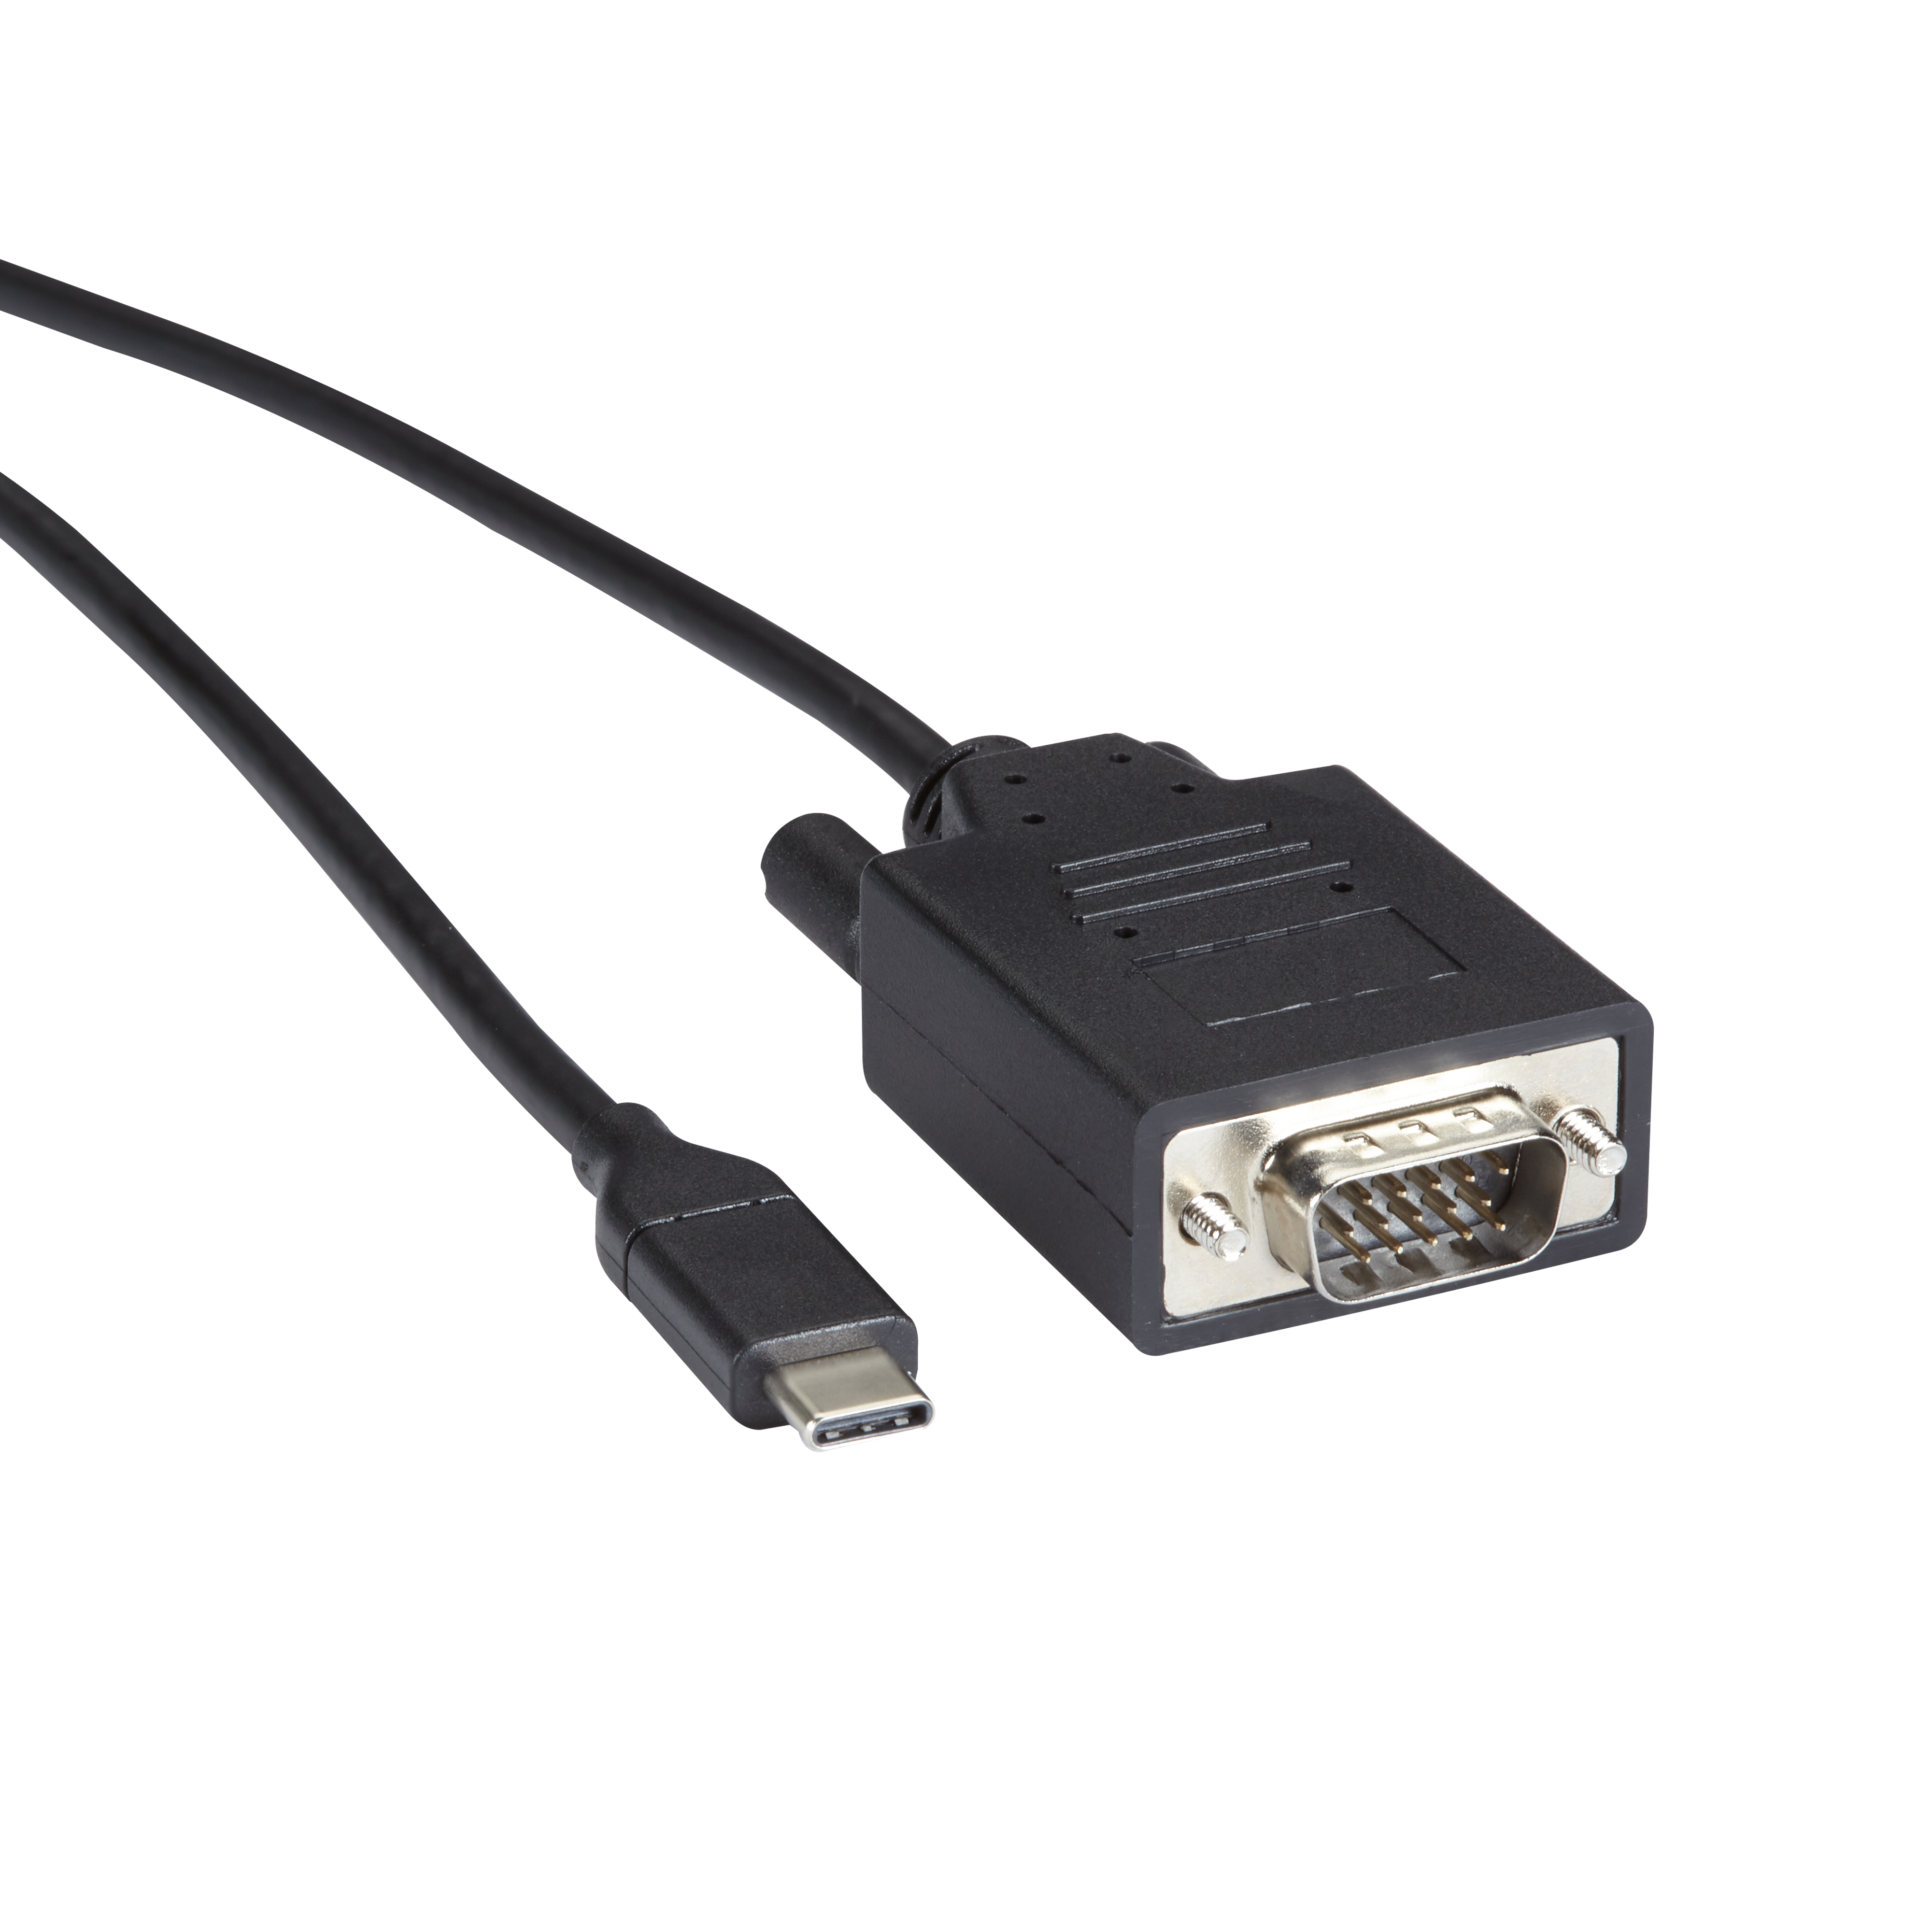 Adaptador USB C a VGA 1080p Tipo Dongle - Adaptadores de vídeo USB